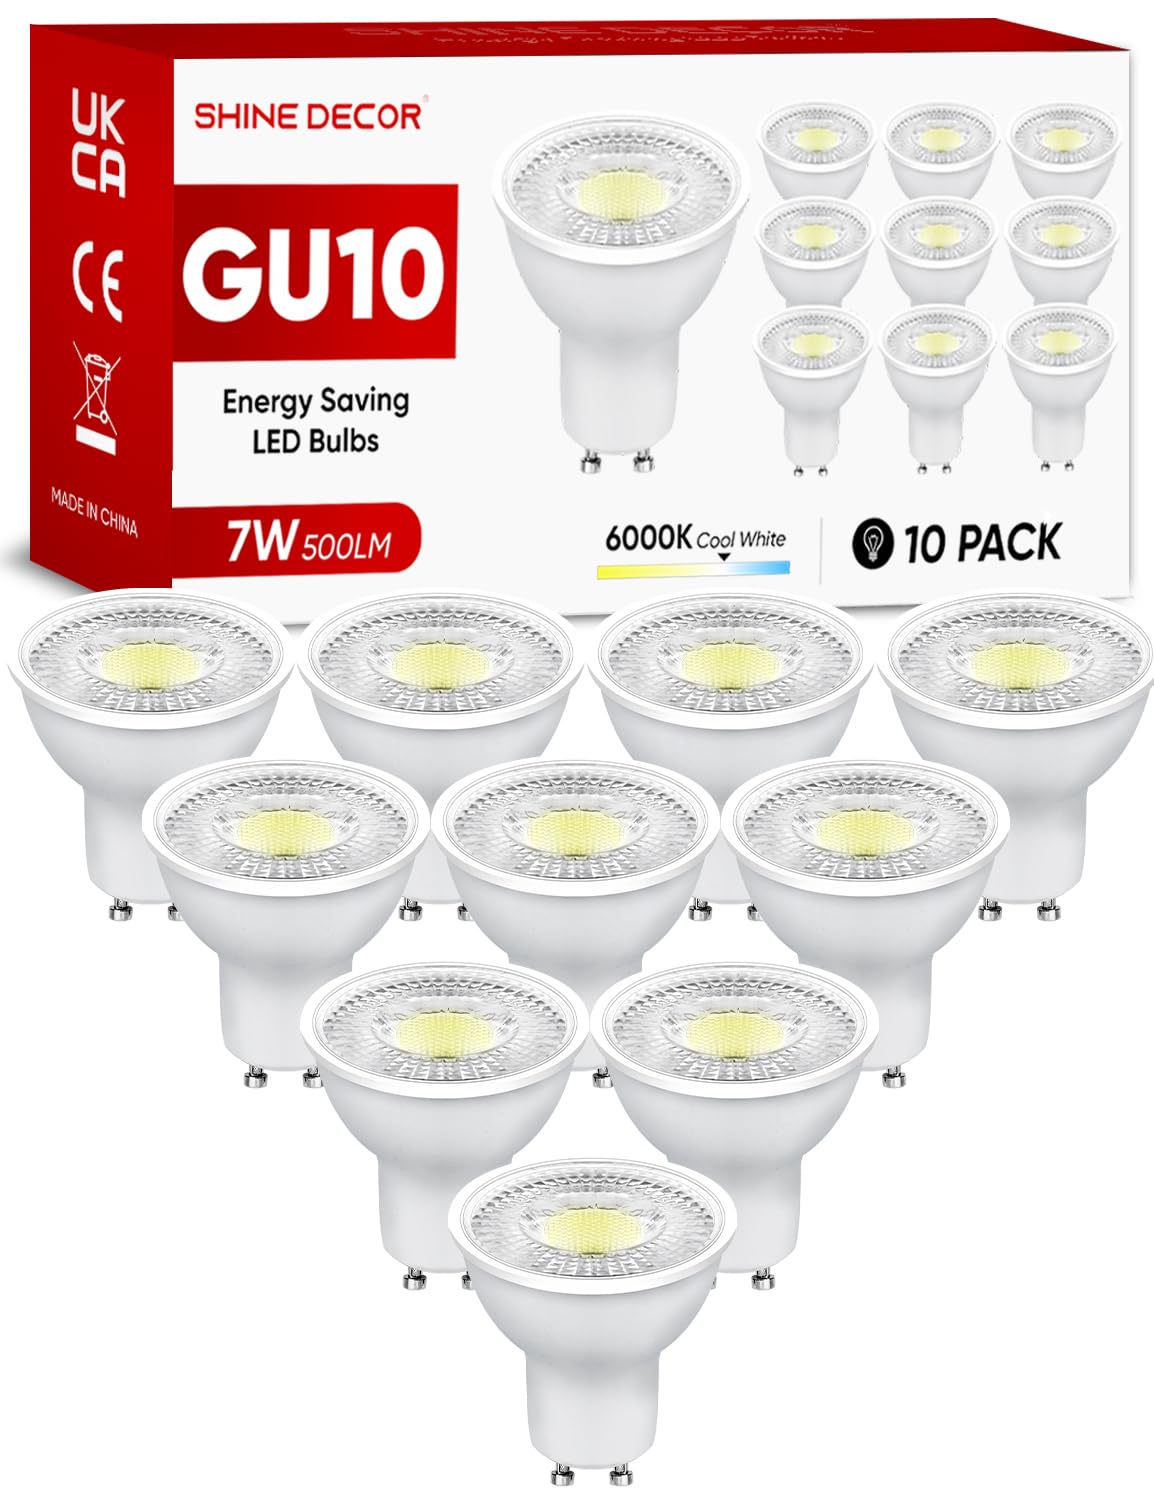 Populaire Shine Decor 7W Ampoule LED GU10, 500LM 6000K Blanc Froid Spot LED, Lampe Économe en Énergie et en Coûts(Équivalent 50W Lampe Halogène), Angle de Faisceau 38°, Non-Dimmable, Lot de 10    [Classe énergétique F] Z2cUDK5XU Haute Quaity